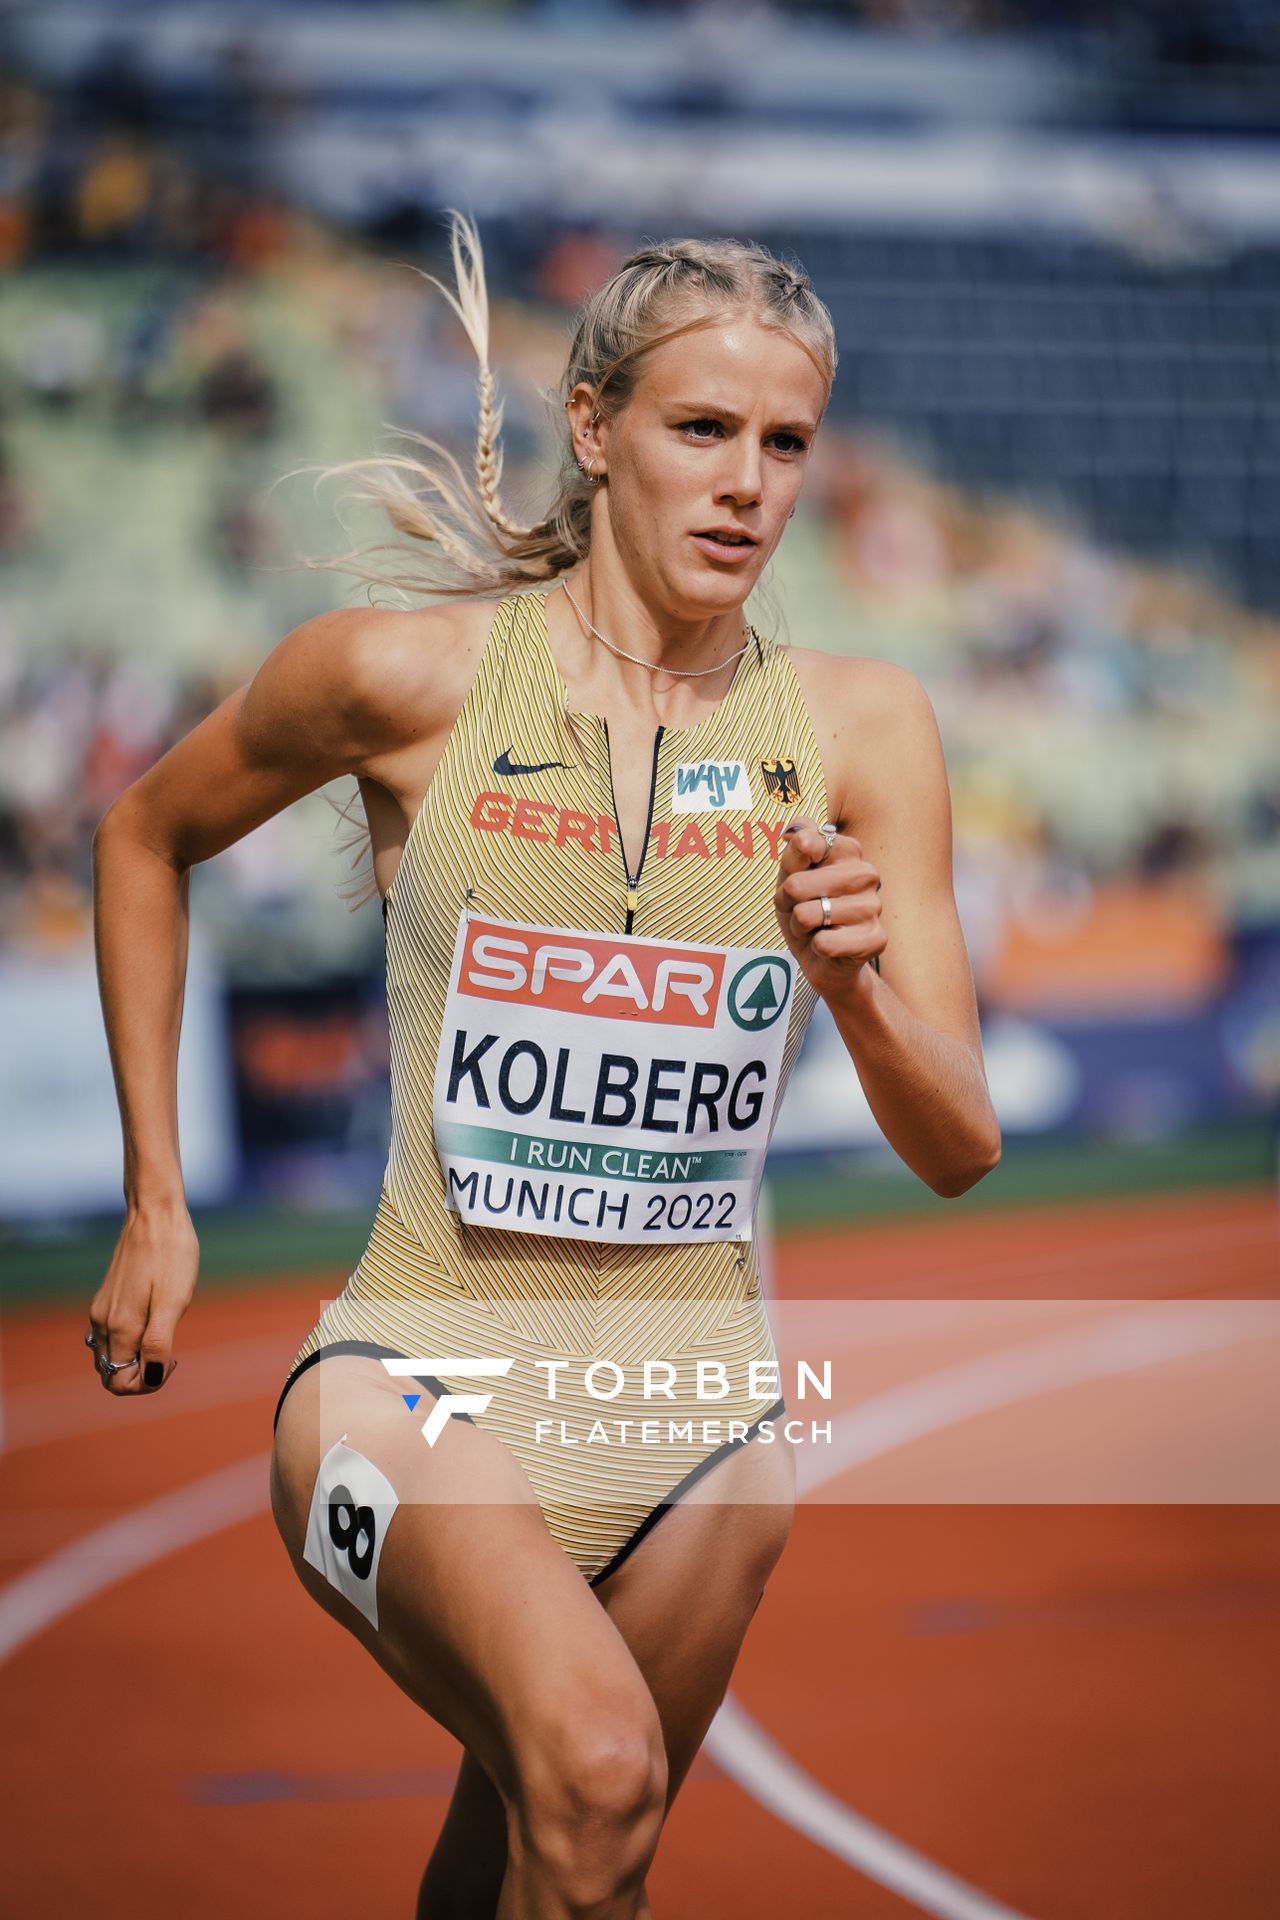 Majtie Kolberg (GER) im 800m Vorlauf am 18.08.2022 bei den Leichtathletik-Europameisterschaften in Muenchen